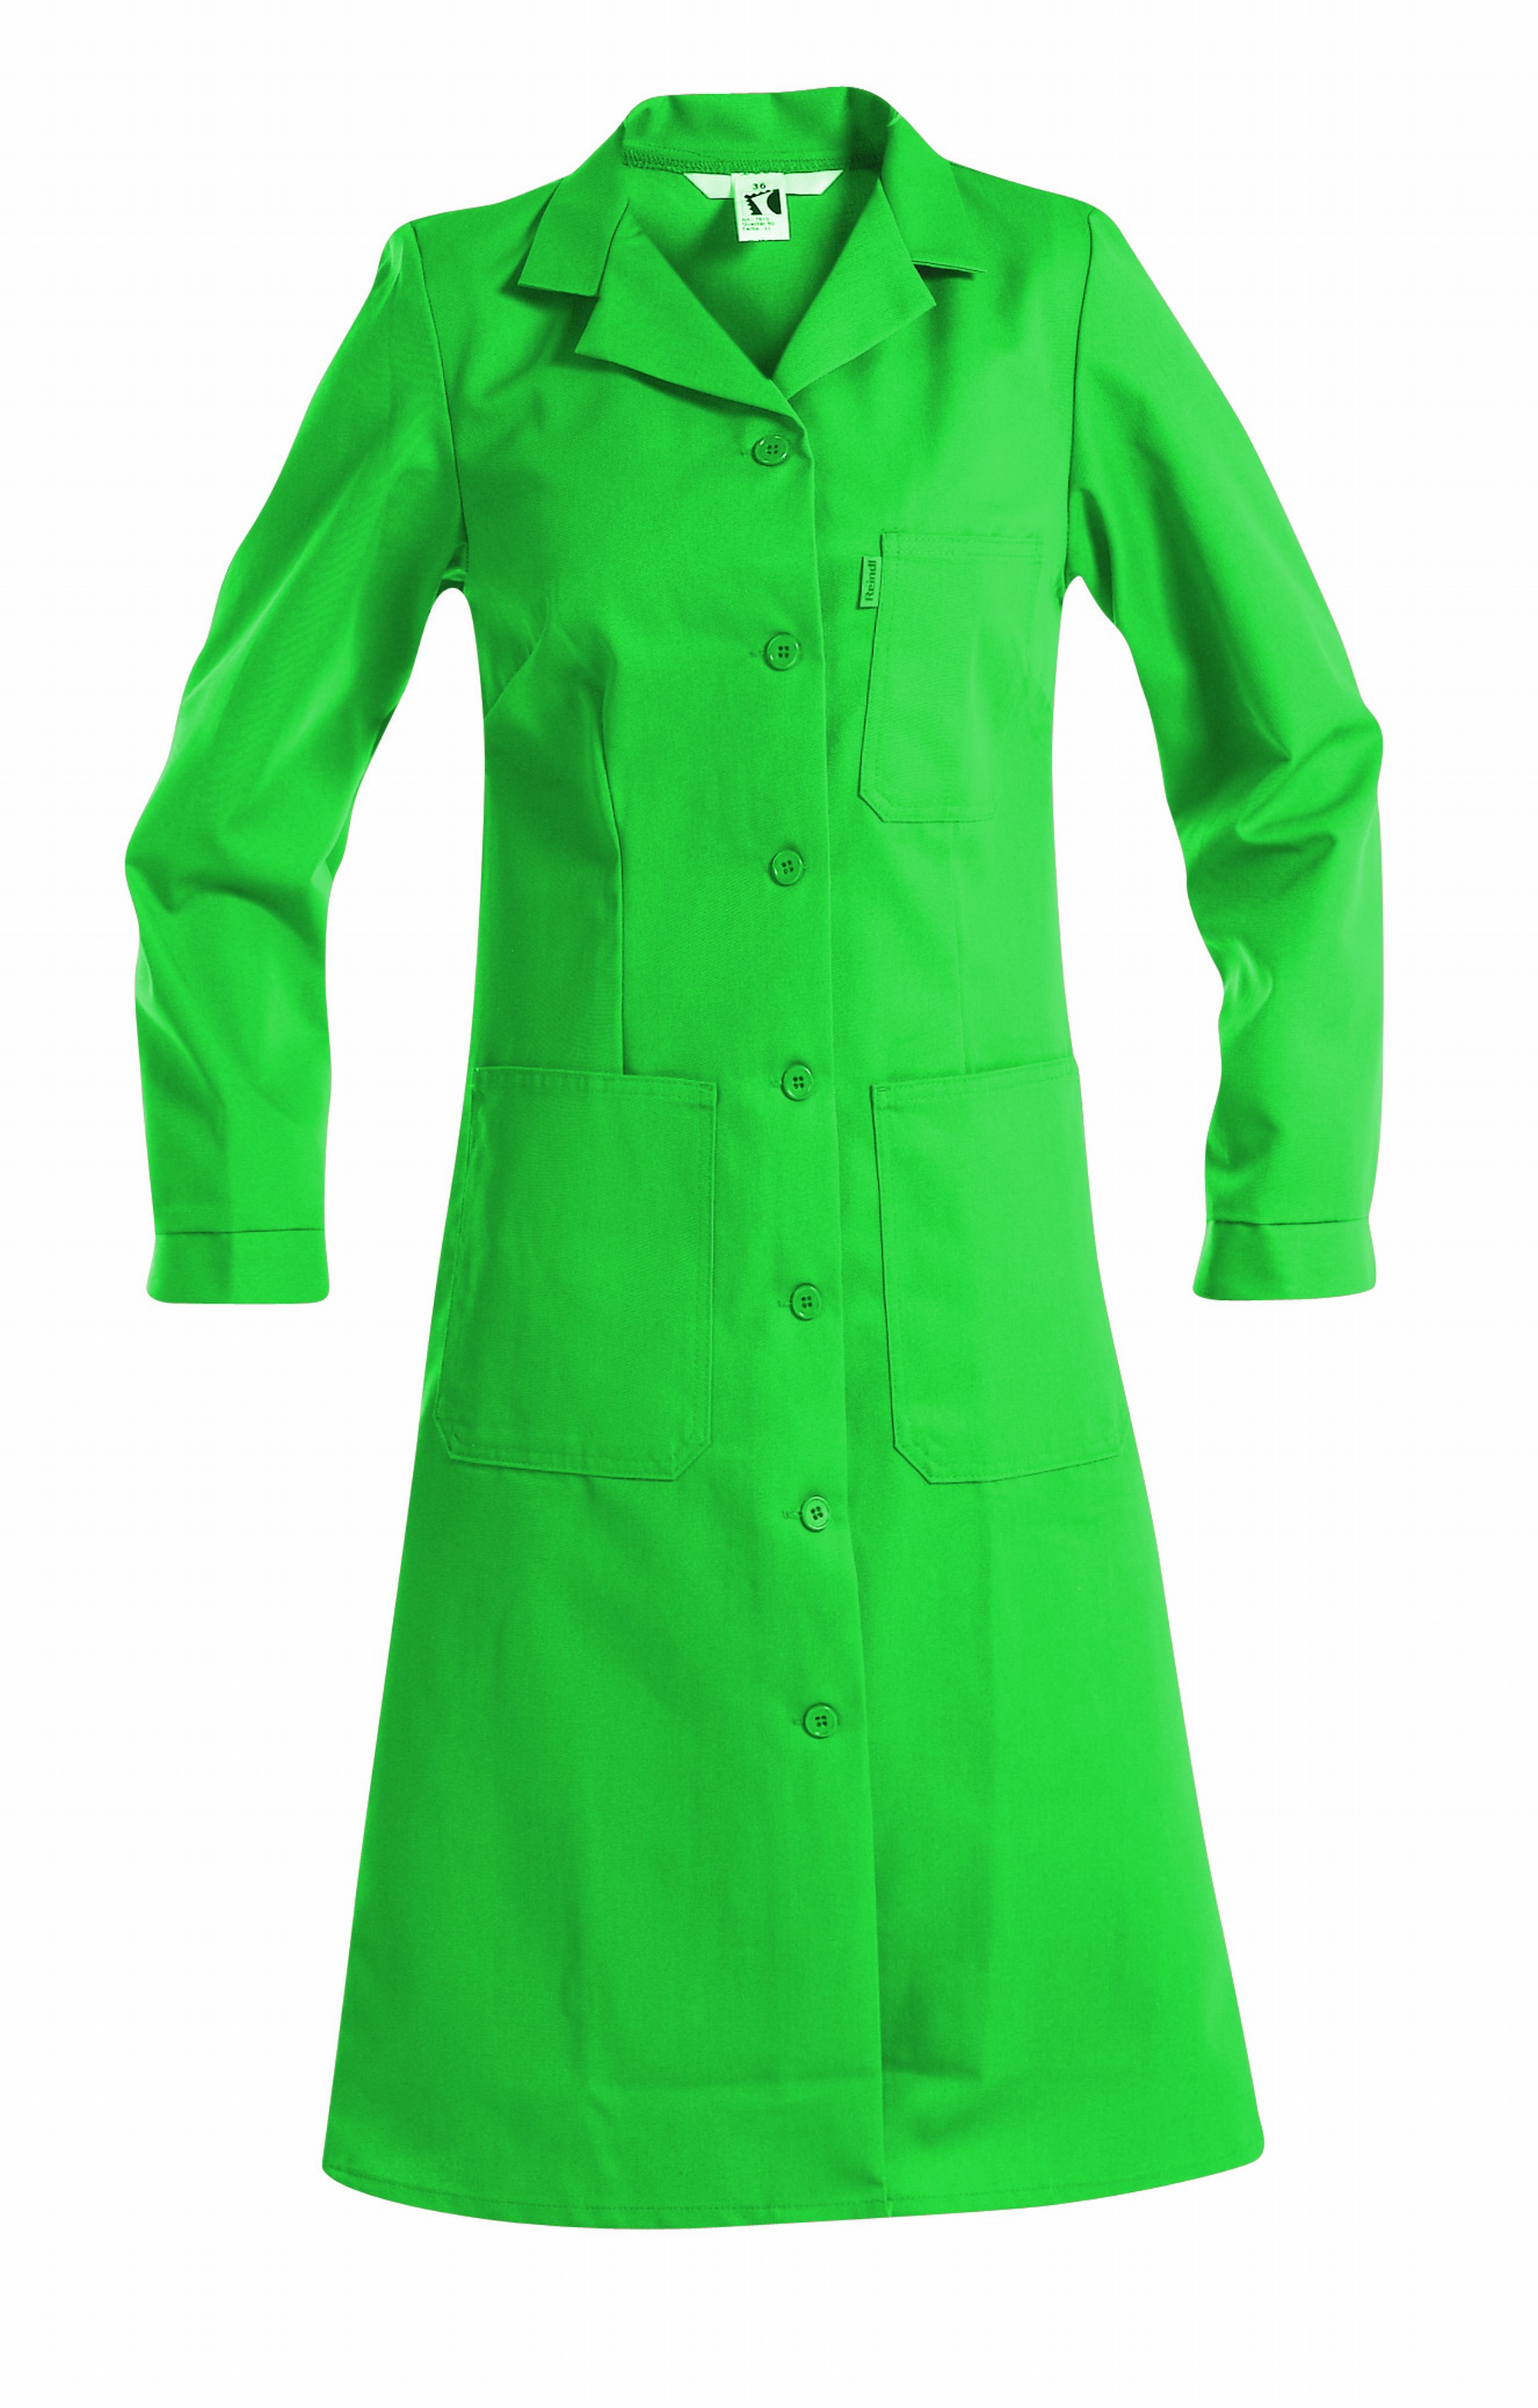 REINDL | Damen-Mantel | Arbeitskleidung & Arbeitsschutzartikel von Reindl